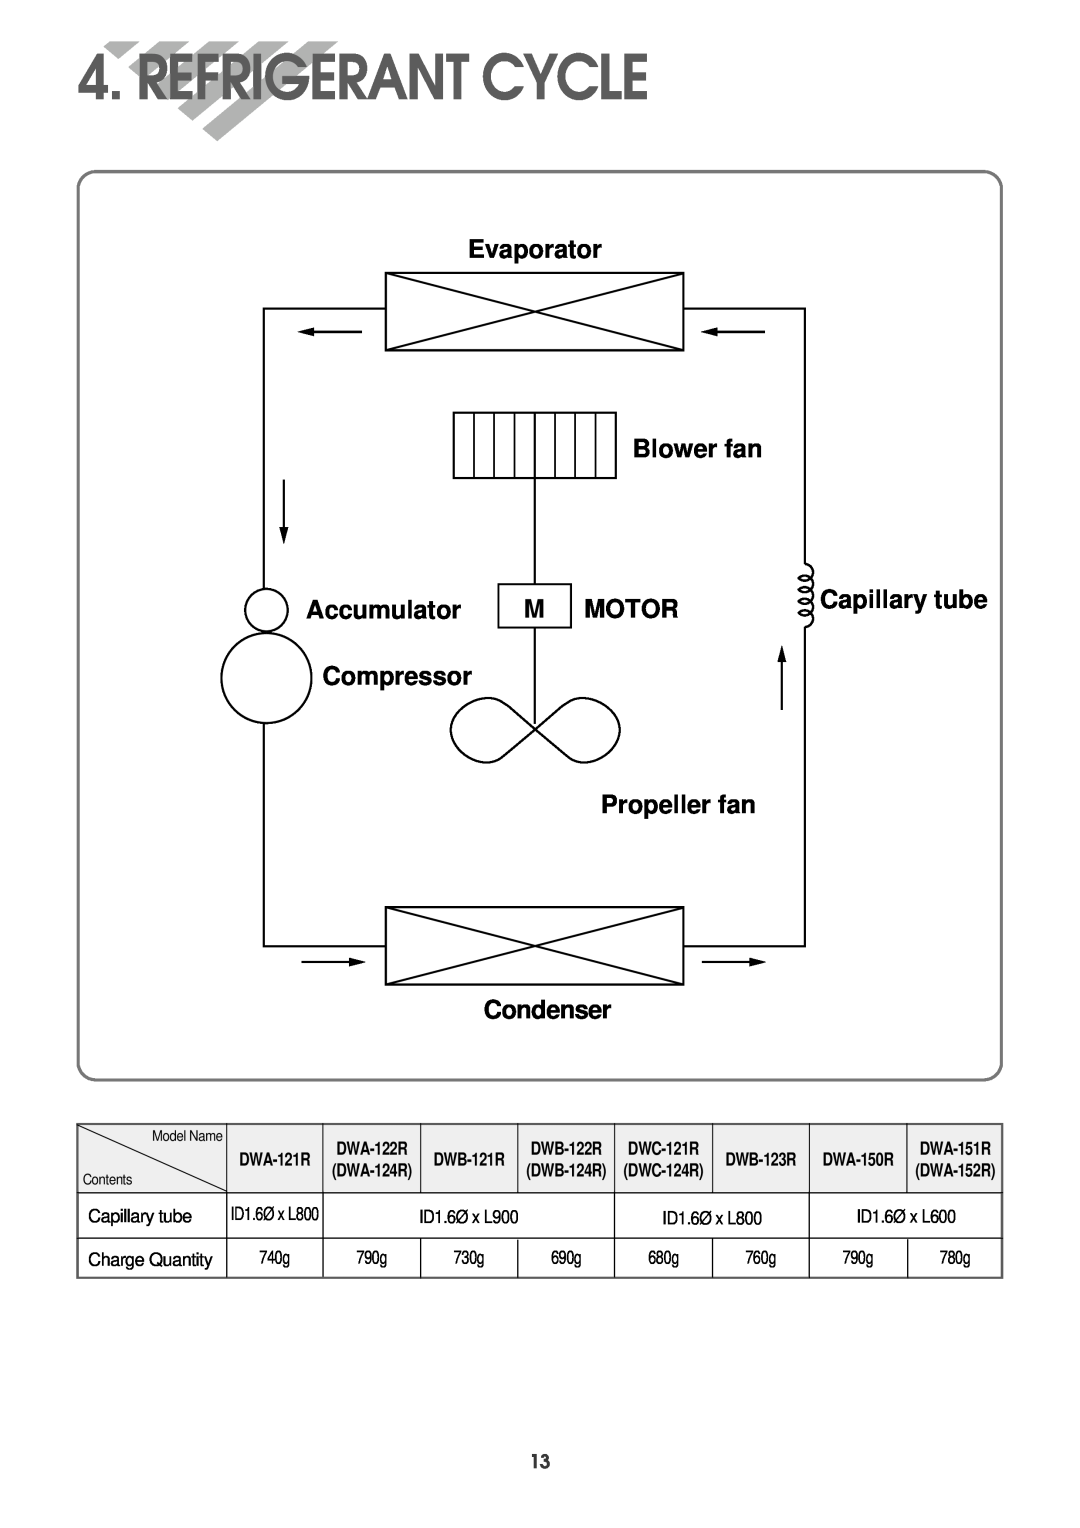 Daewoo Refrigerant Cycle, Capillary tube, Evaporator Blower fan, Accumulator, Motor, DWB-122R DWC-121R, DWA-122R 